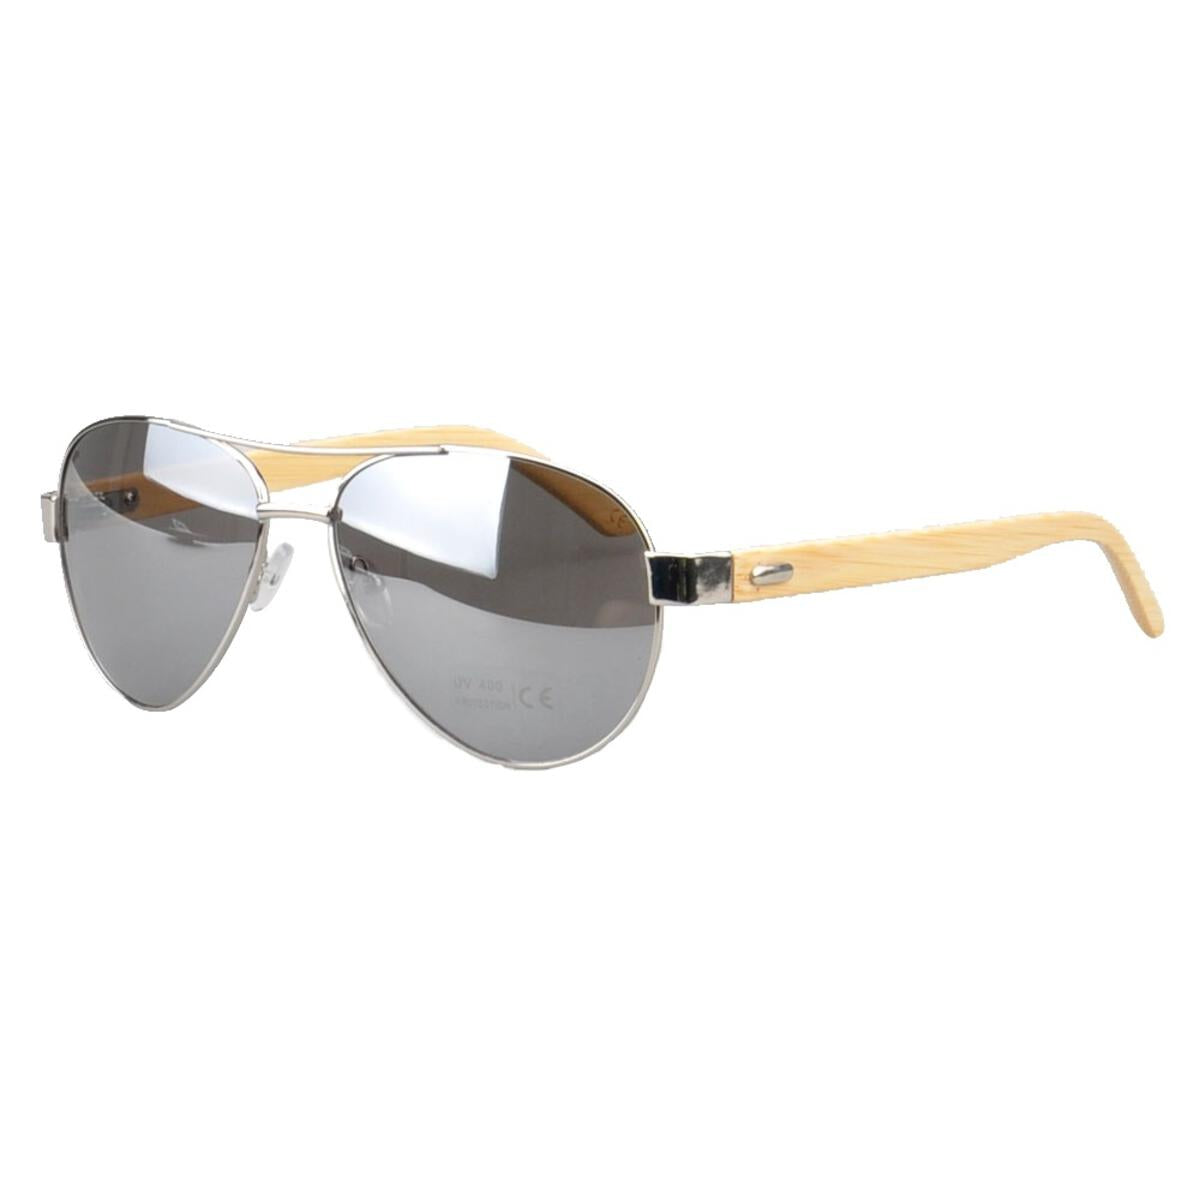 Silver Jacaranda Sunglasses